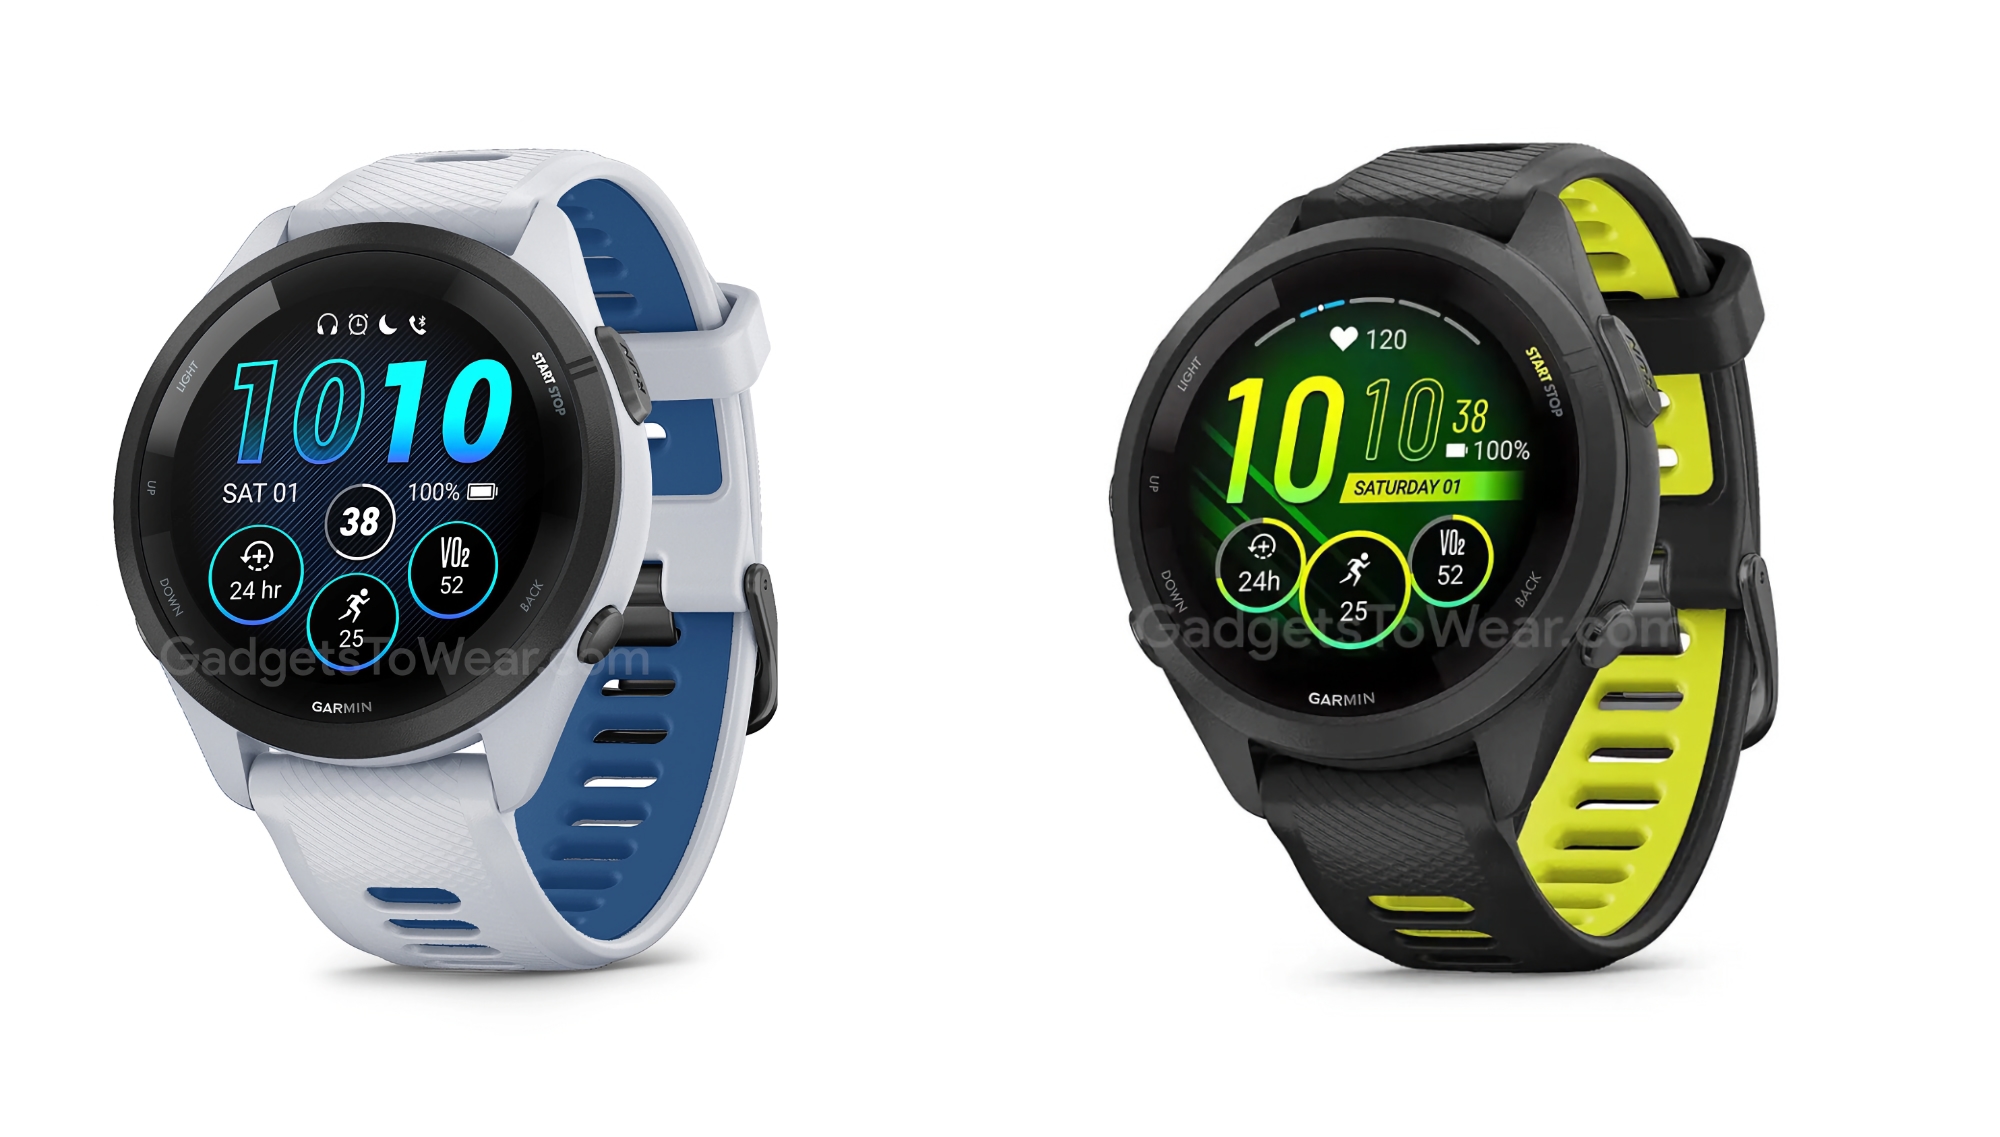 Garmin bringt die sportlichen Smartwatches Forerunner 265 und Forerunner 265s mit AMOLED-Display und bis zu 13 Tagen Akkulaufzeit auf den Markt